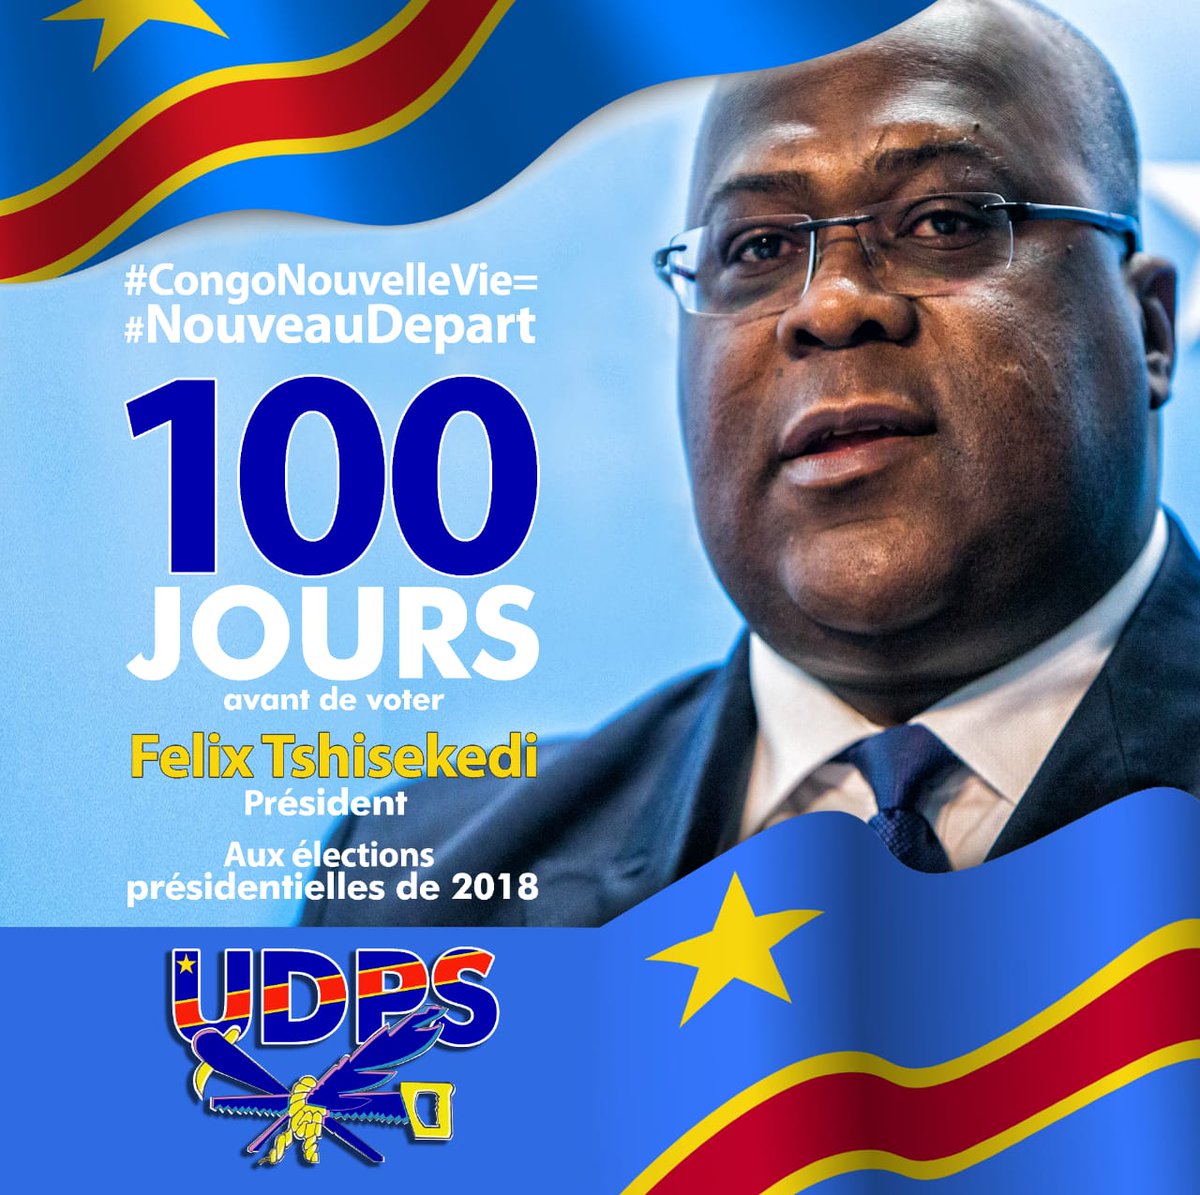 #CongoNouvellevie=
#NouveauDépart
@fatshi13 for president 
Fatshi.org 
Avec le peuple réalisons le rêve d'un nouveau départ.
Peuple d'abord